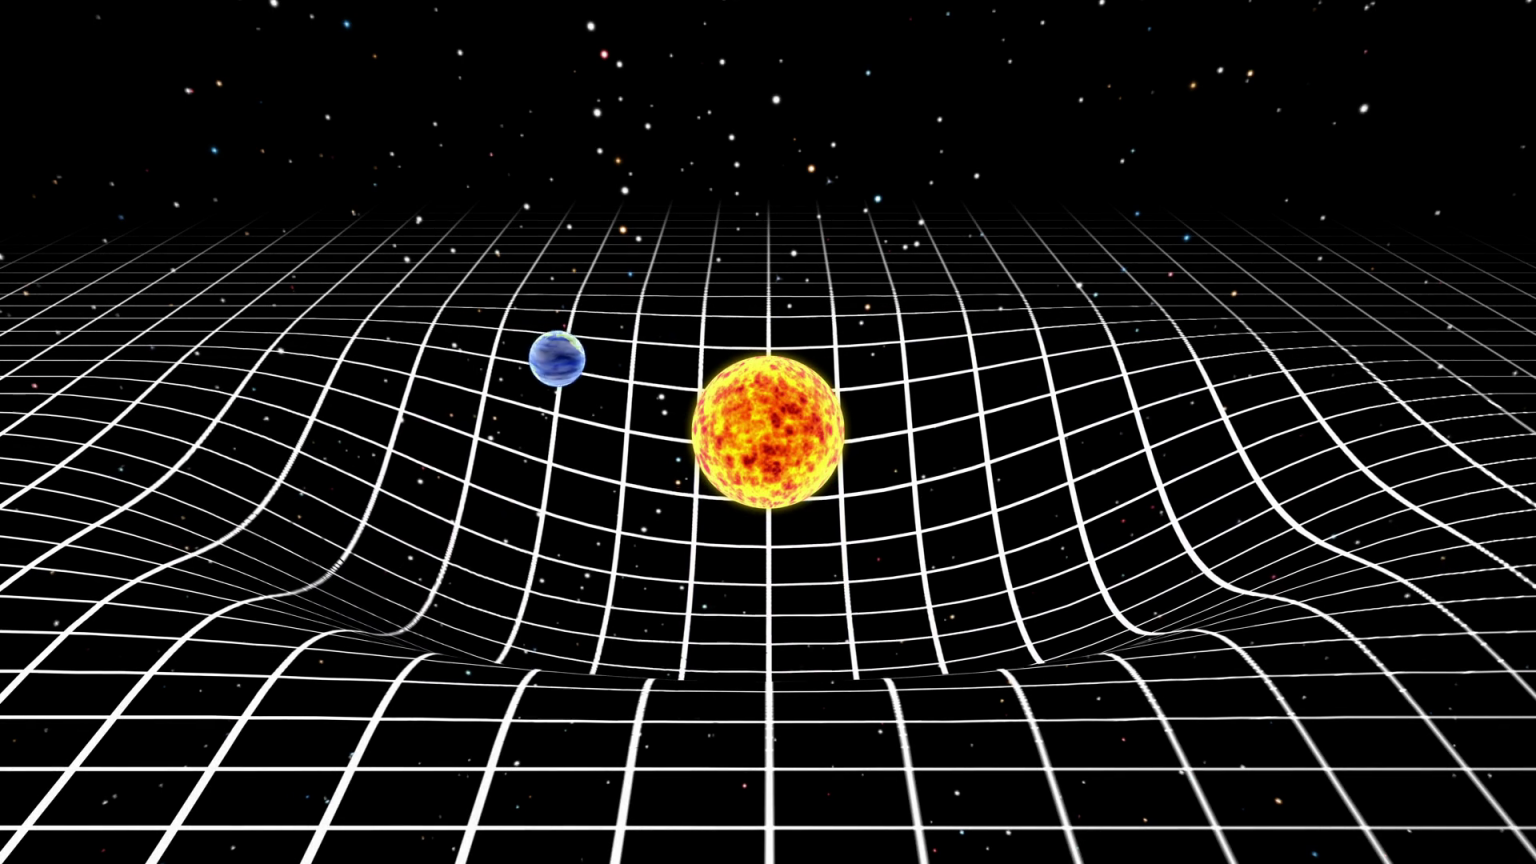 Representação simplificada da distorção do espaço-tempo por uma estrela e um planeta.